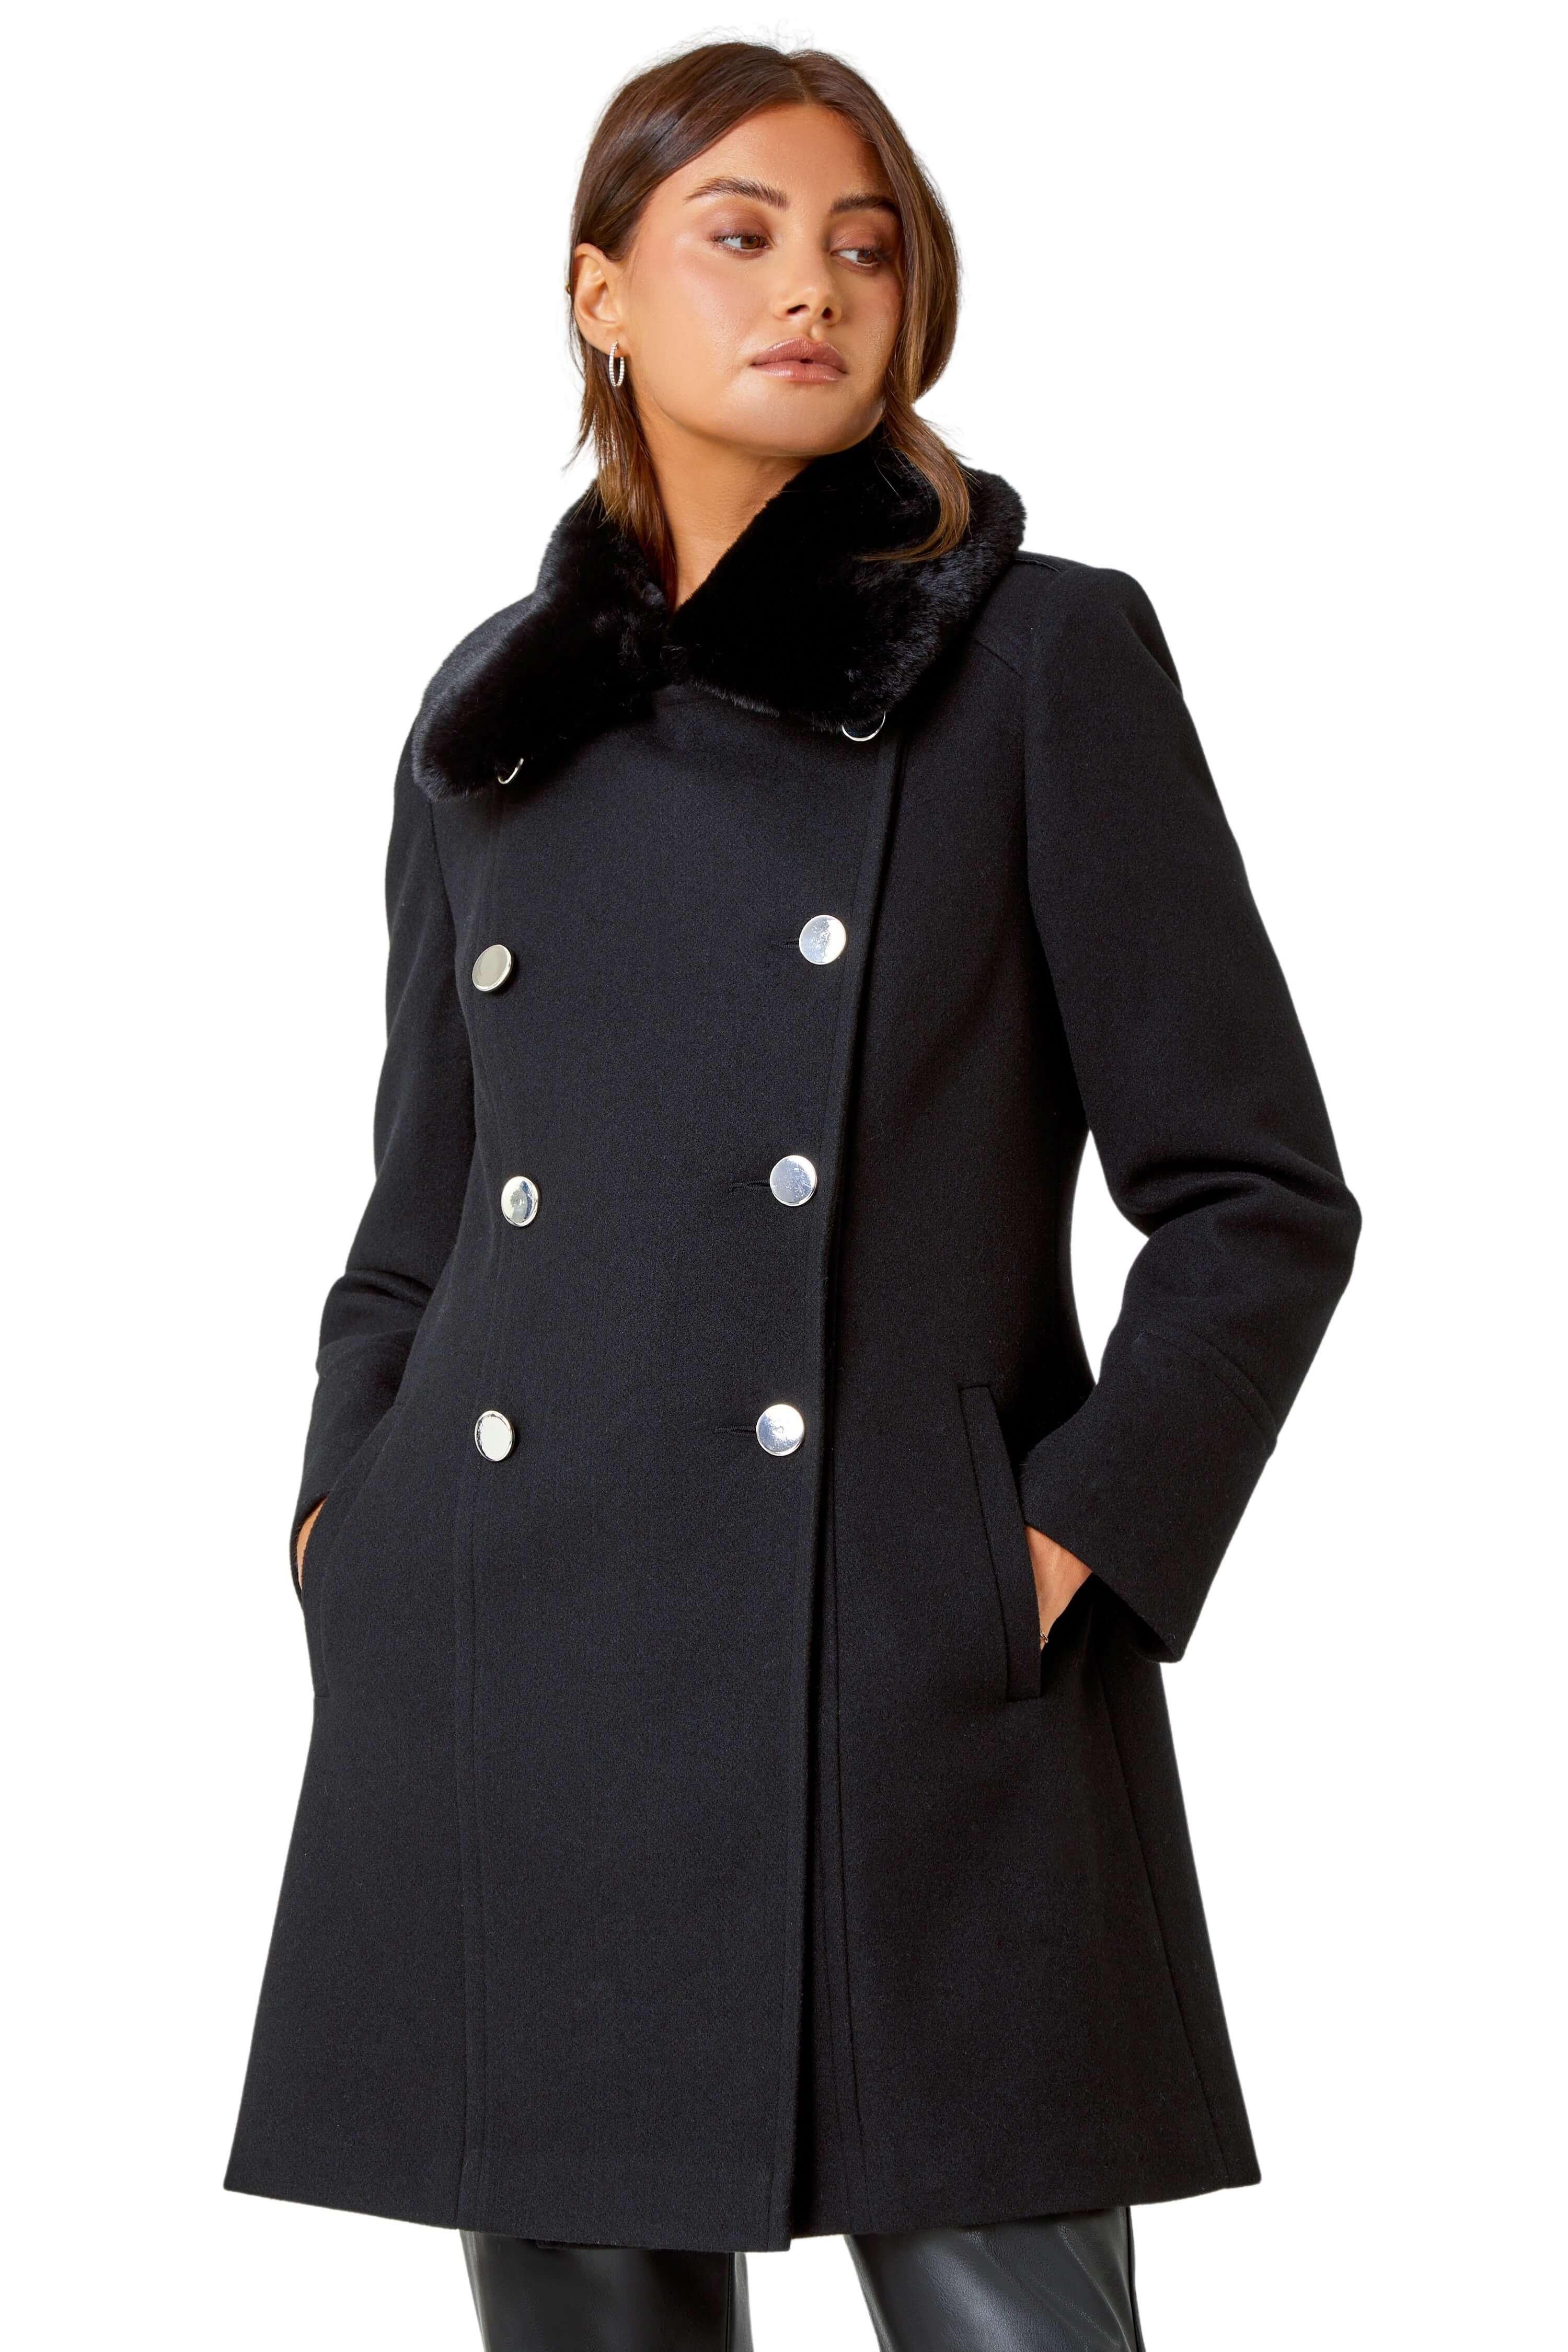 Двубортное пальто с воротником из искусственного меха Roman, черный женский укороченный трикотажный кардиган со съемным воротником из искусственного меха shade